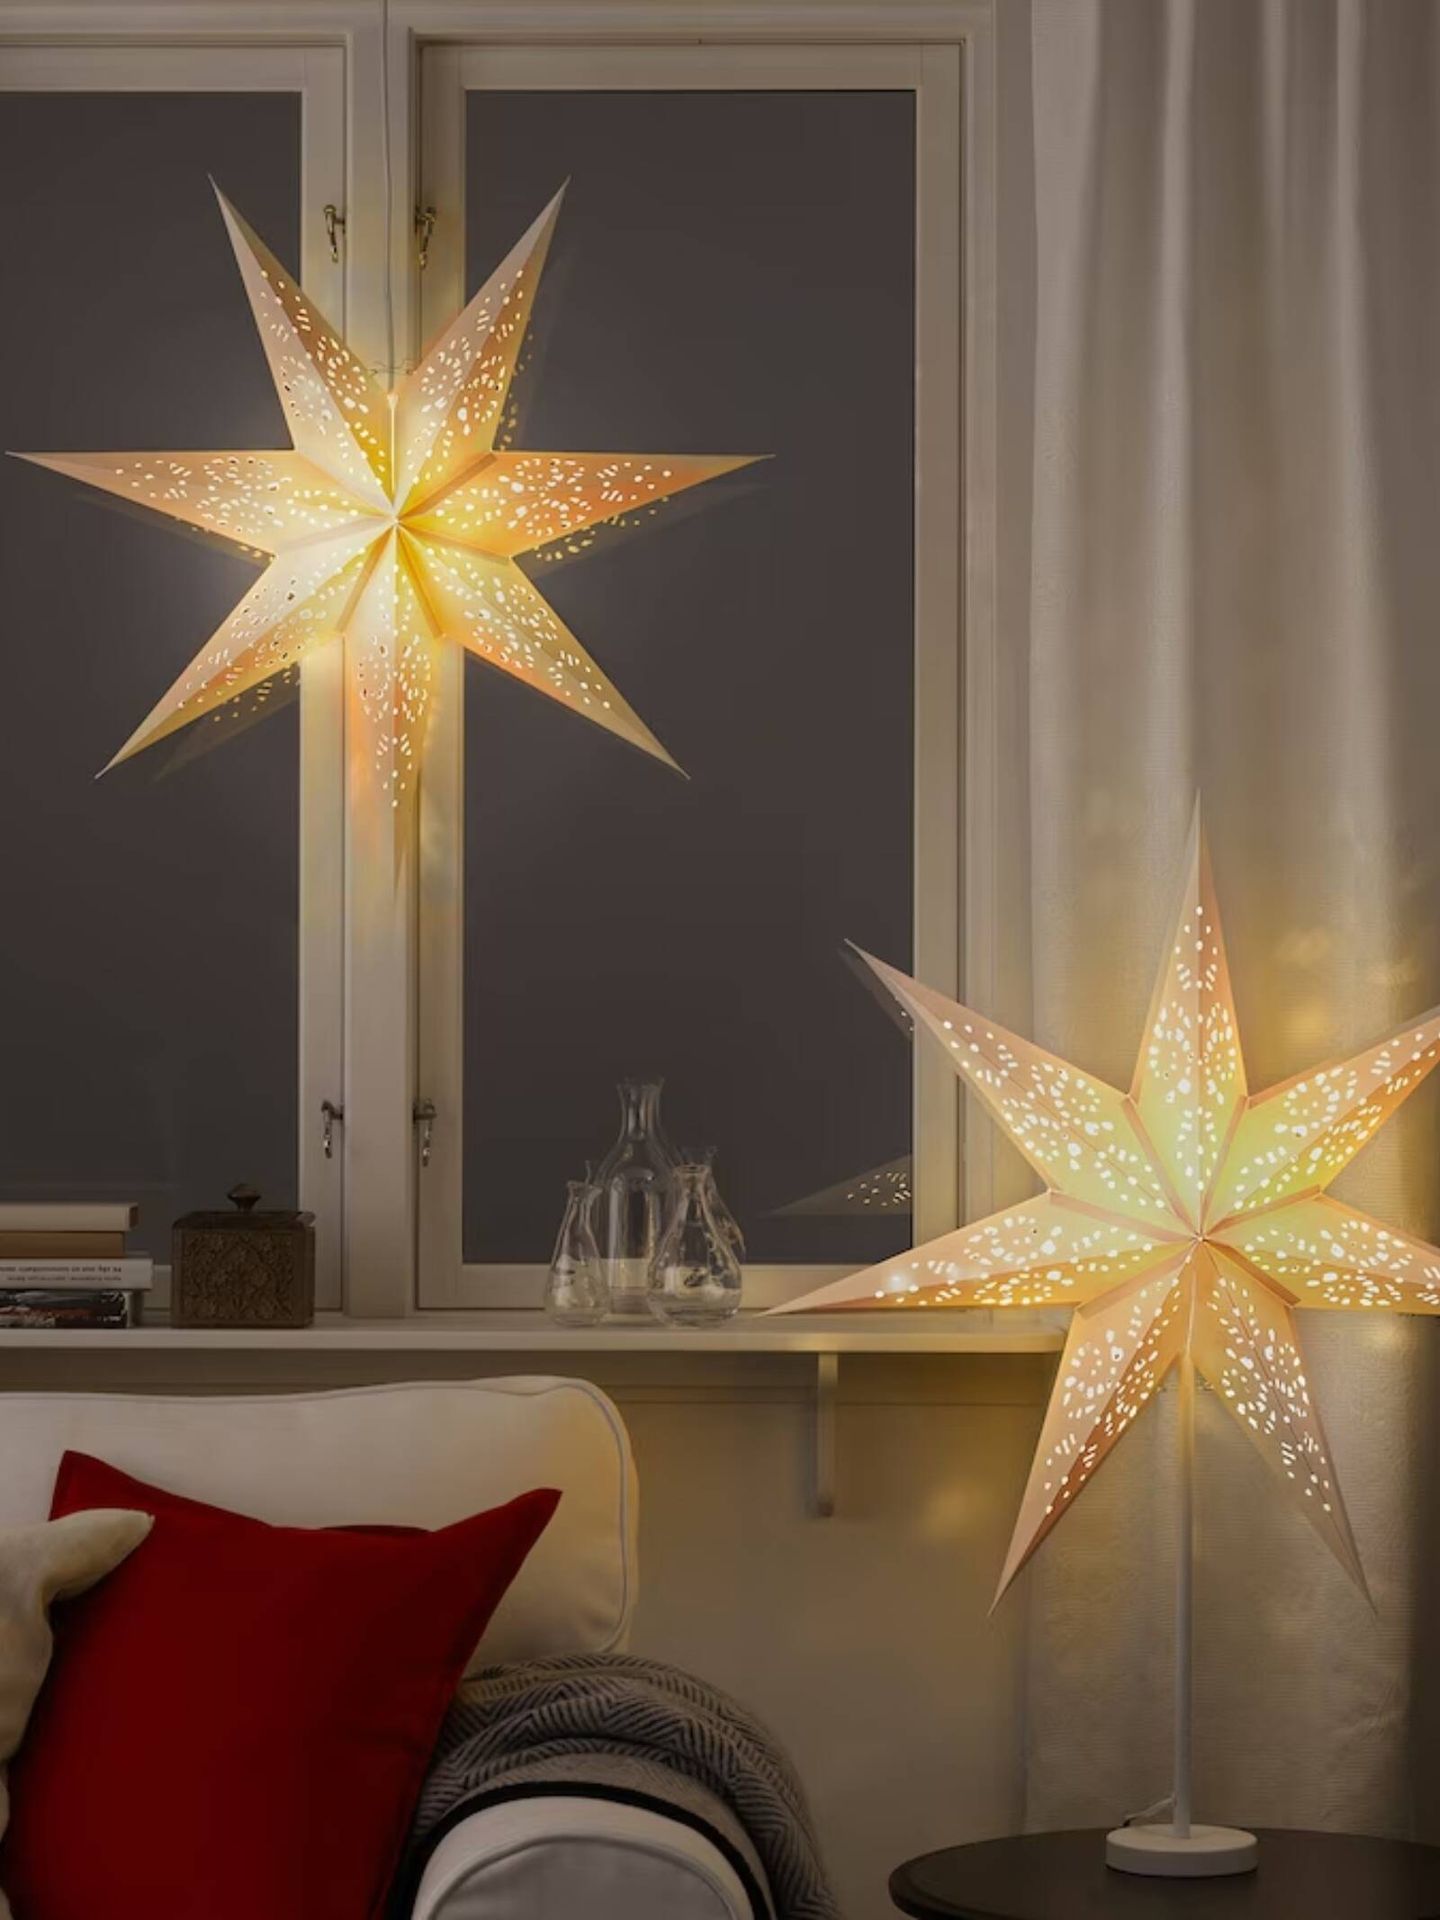 Estrellas con luz, típico adorno nórdico de Navidad por menos de 20 euros. (Cortesía/Ikea)